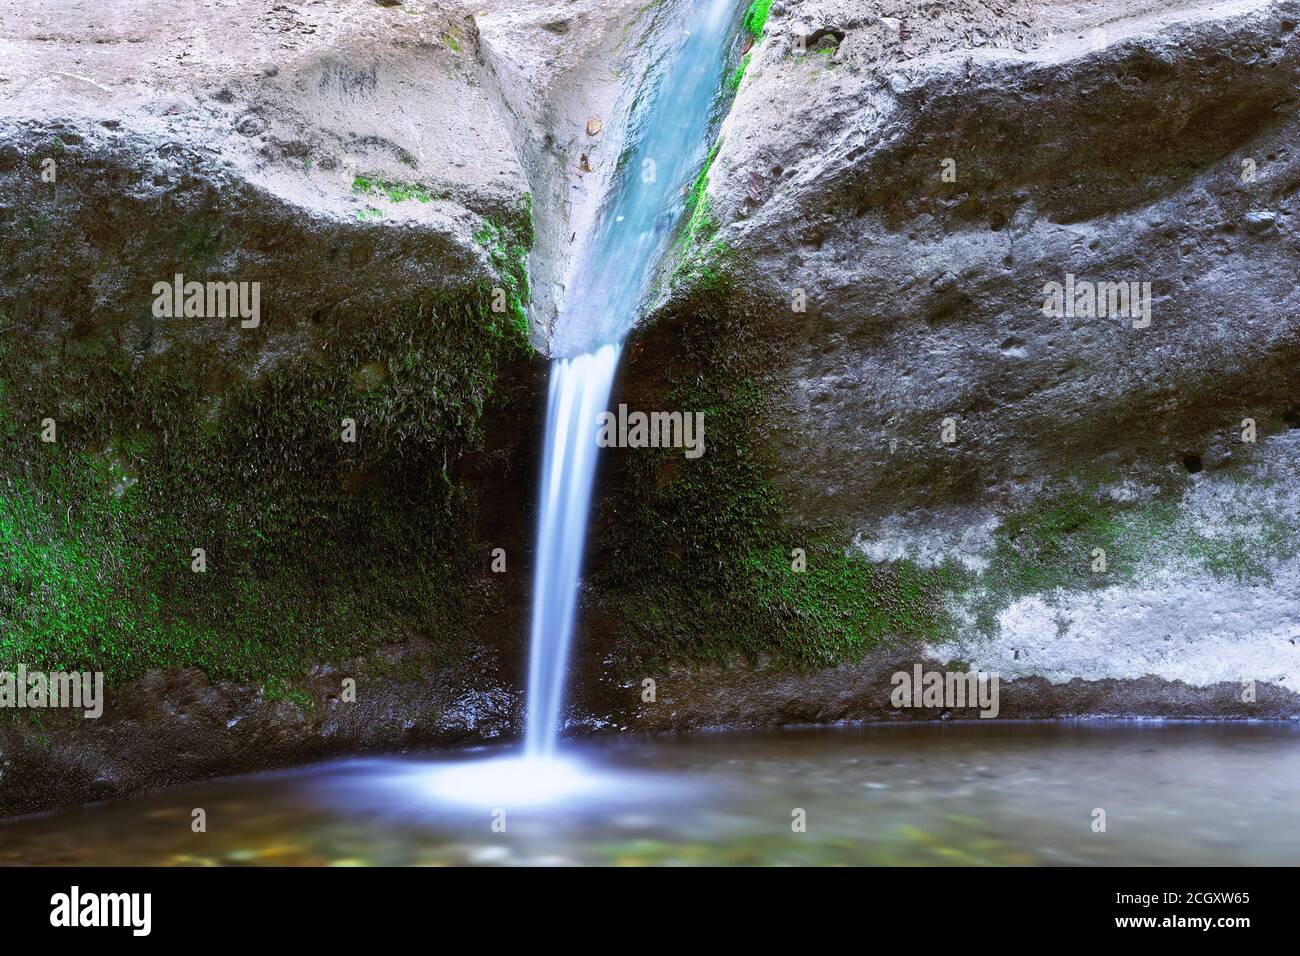 Détail de la belle cascade en Transylvanie, la Gavane, Apuseni montagnes Banque D'Images